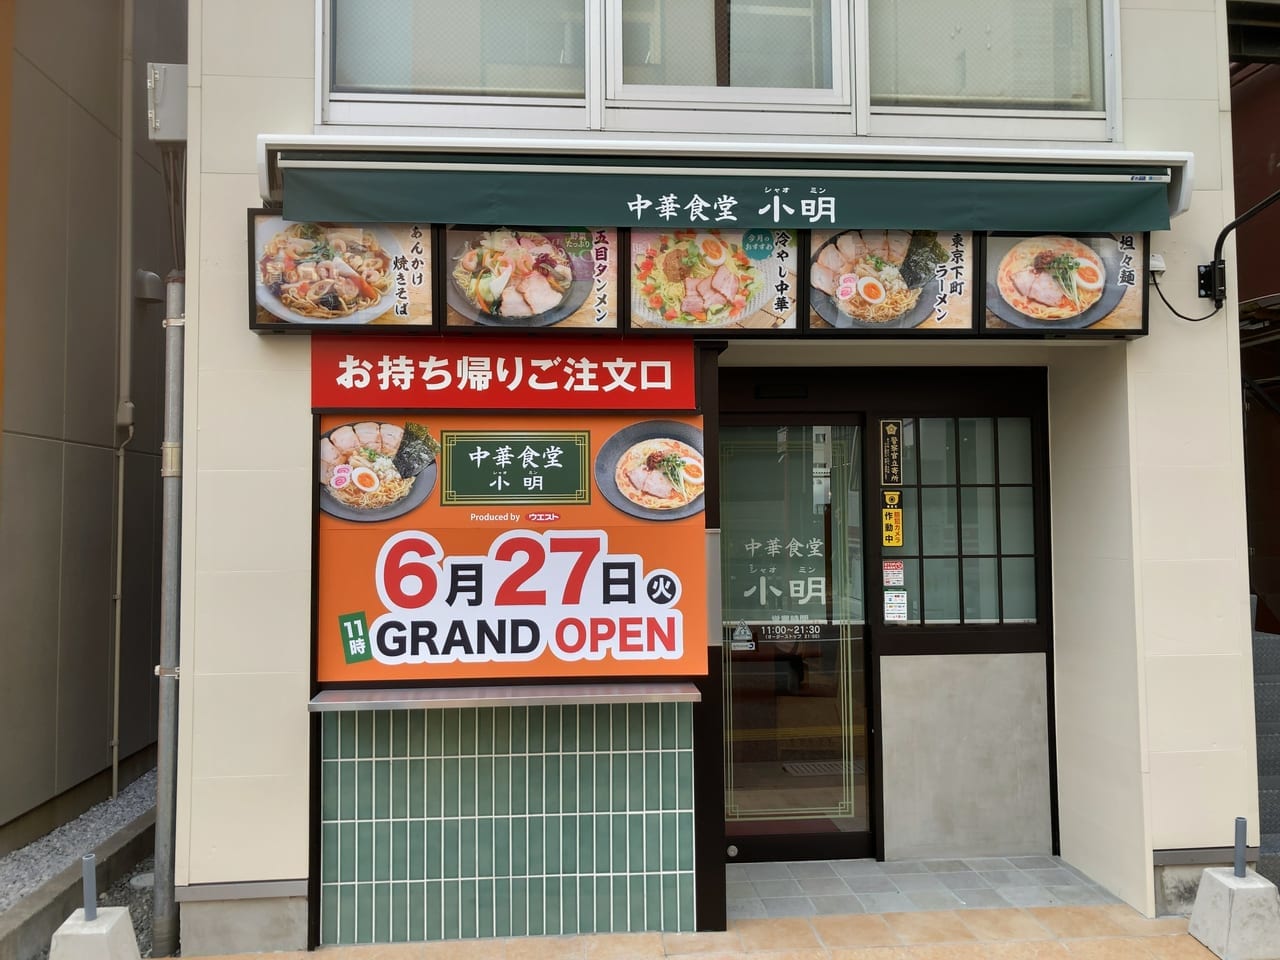 中華食堂 小明(シャオミン)が、6月27日(火)11時にグランドオープンするようです。